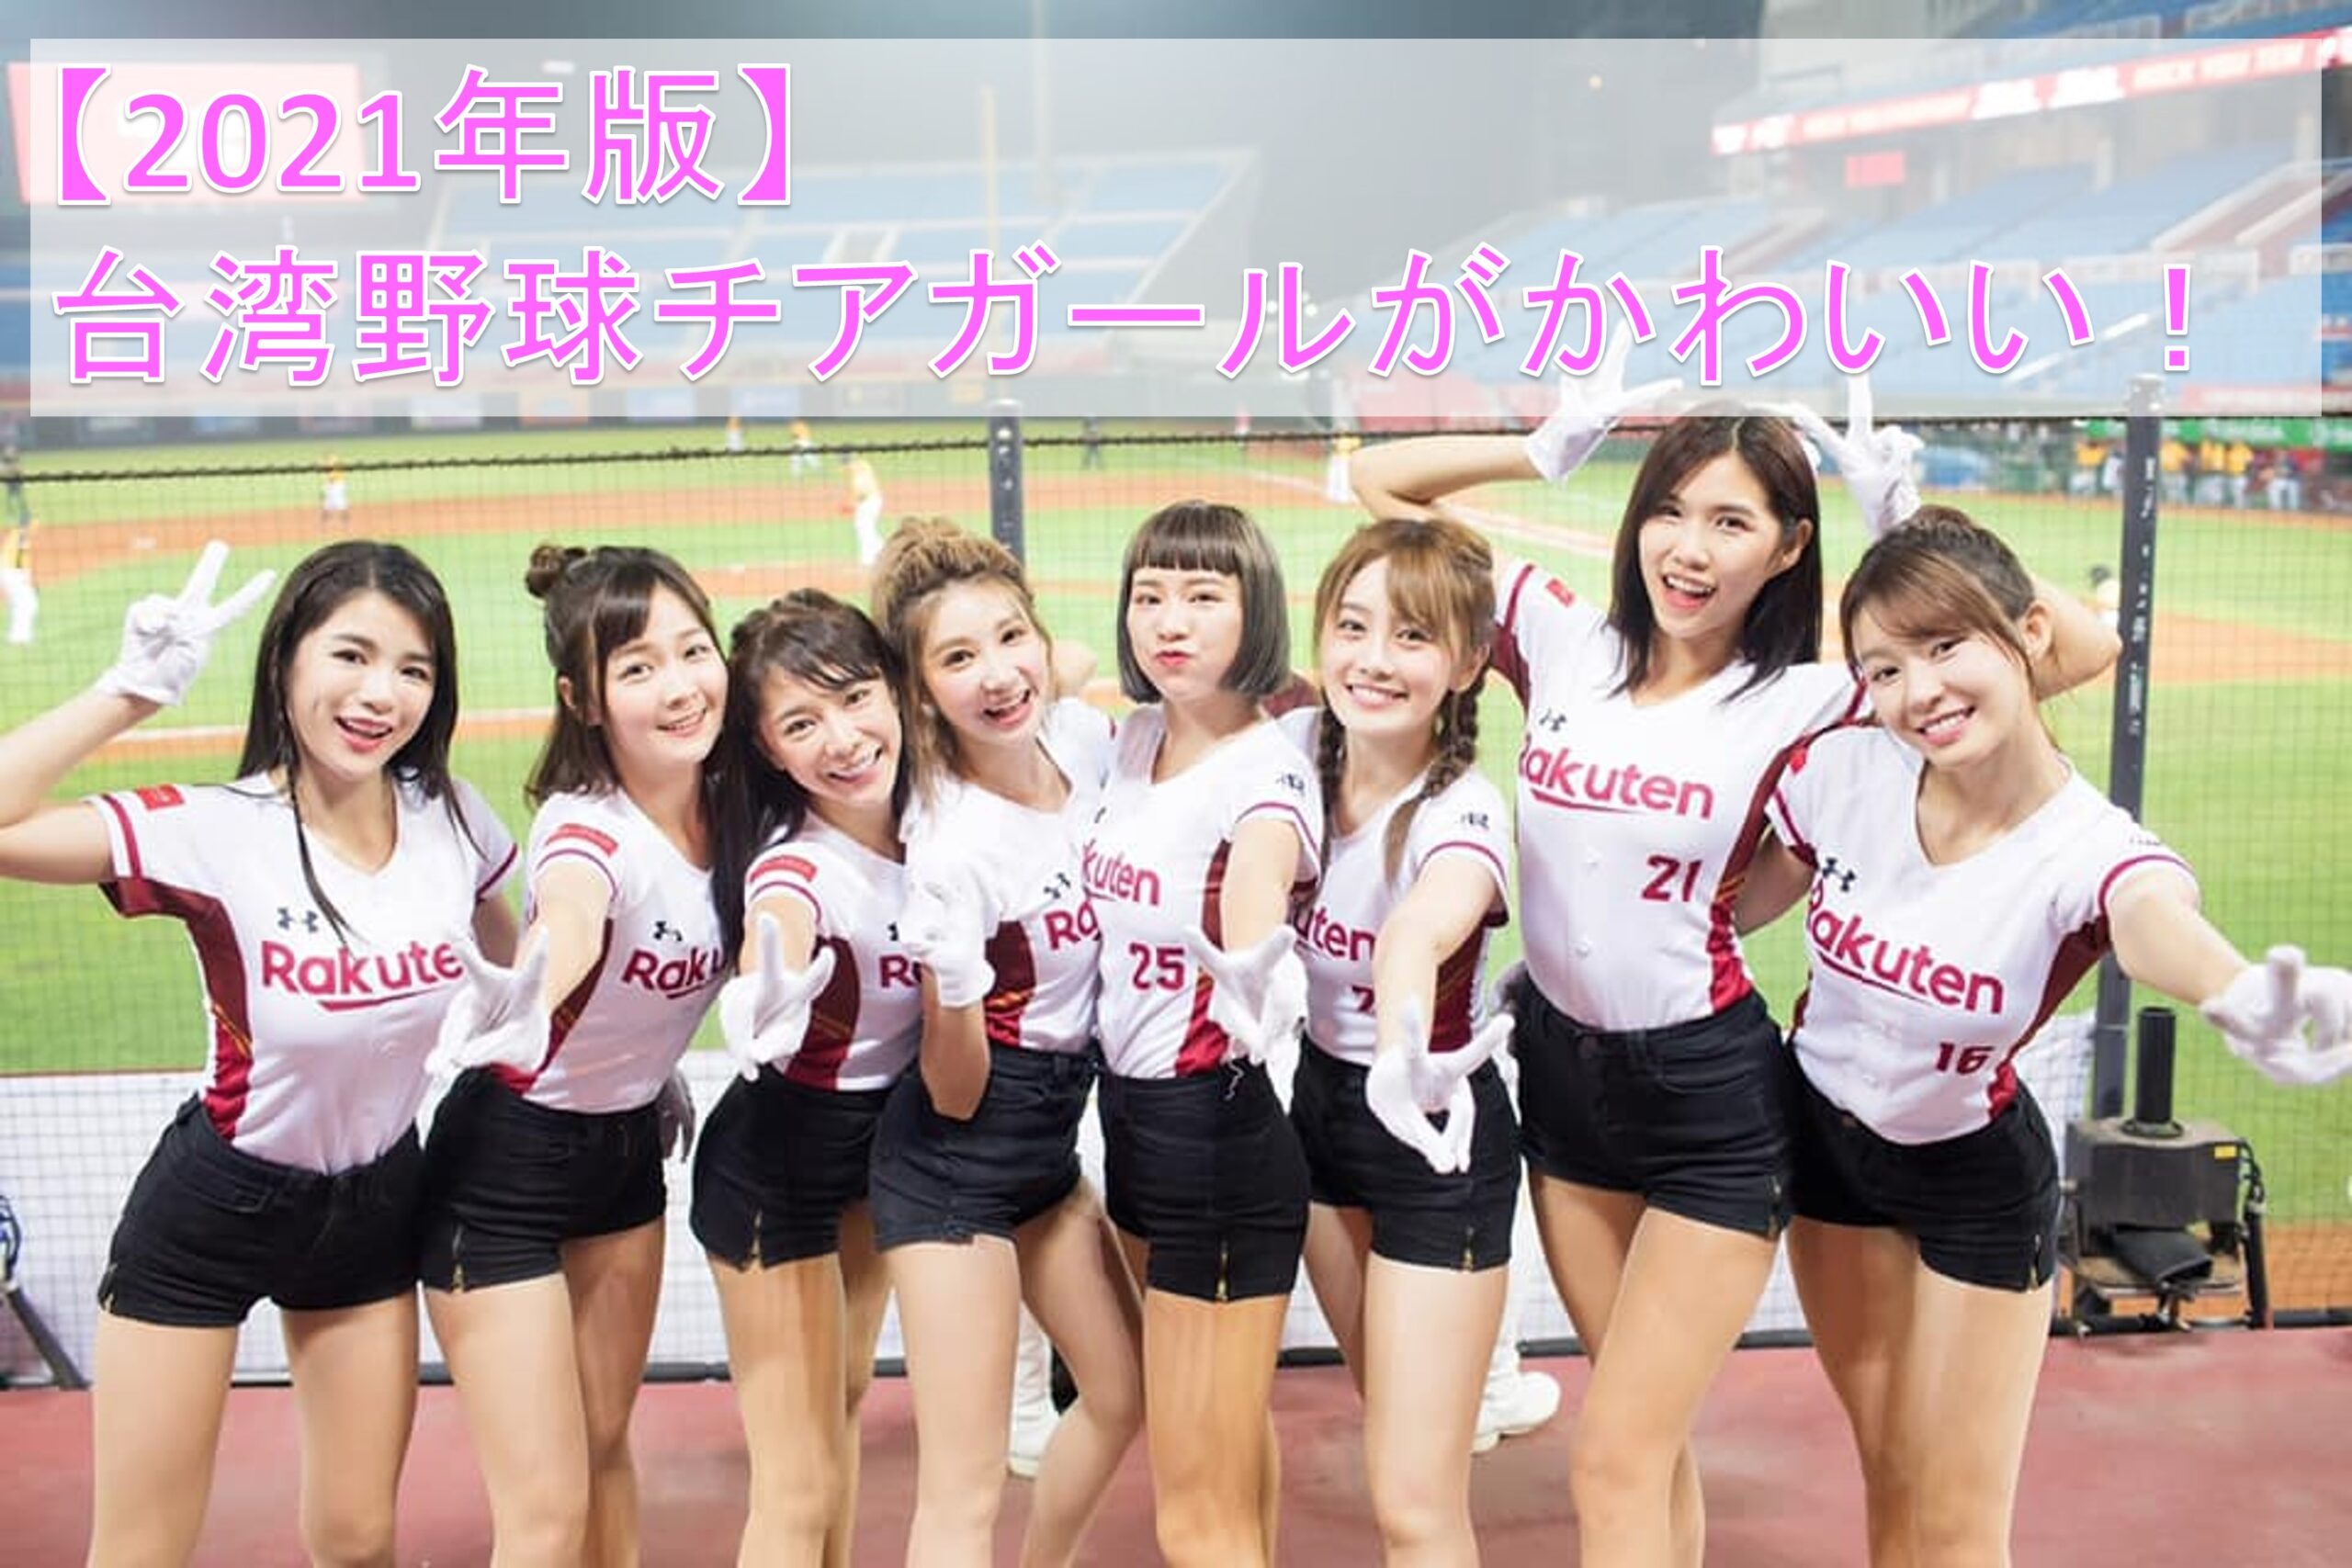 21年版 台湾野球チアガールがかわいい 美人チア人気ランキング Taichi Blog